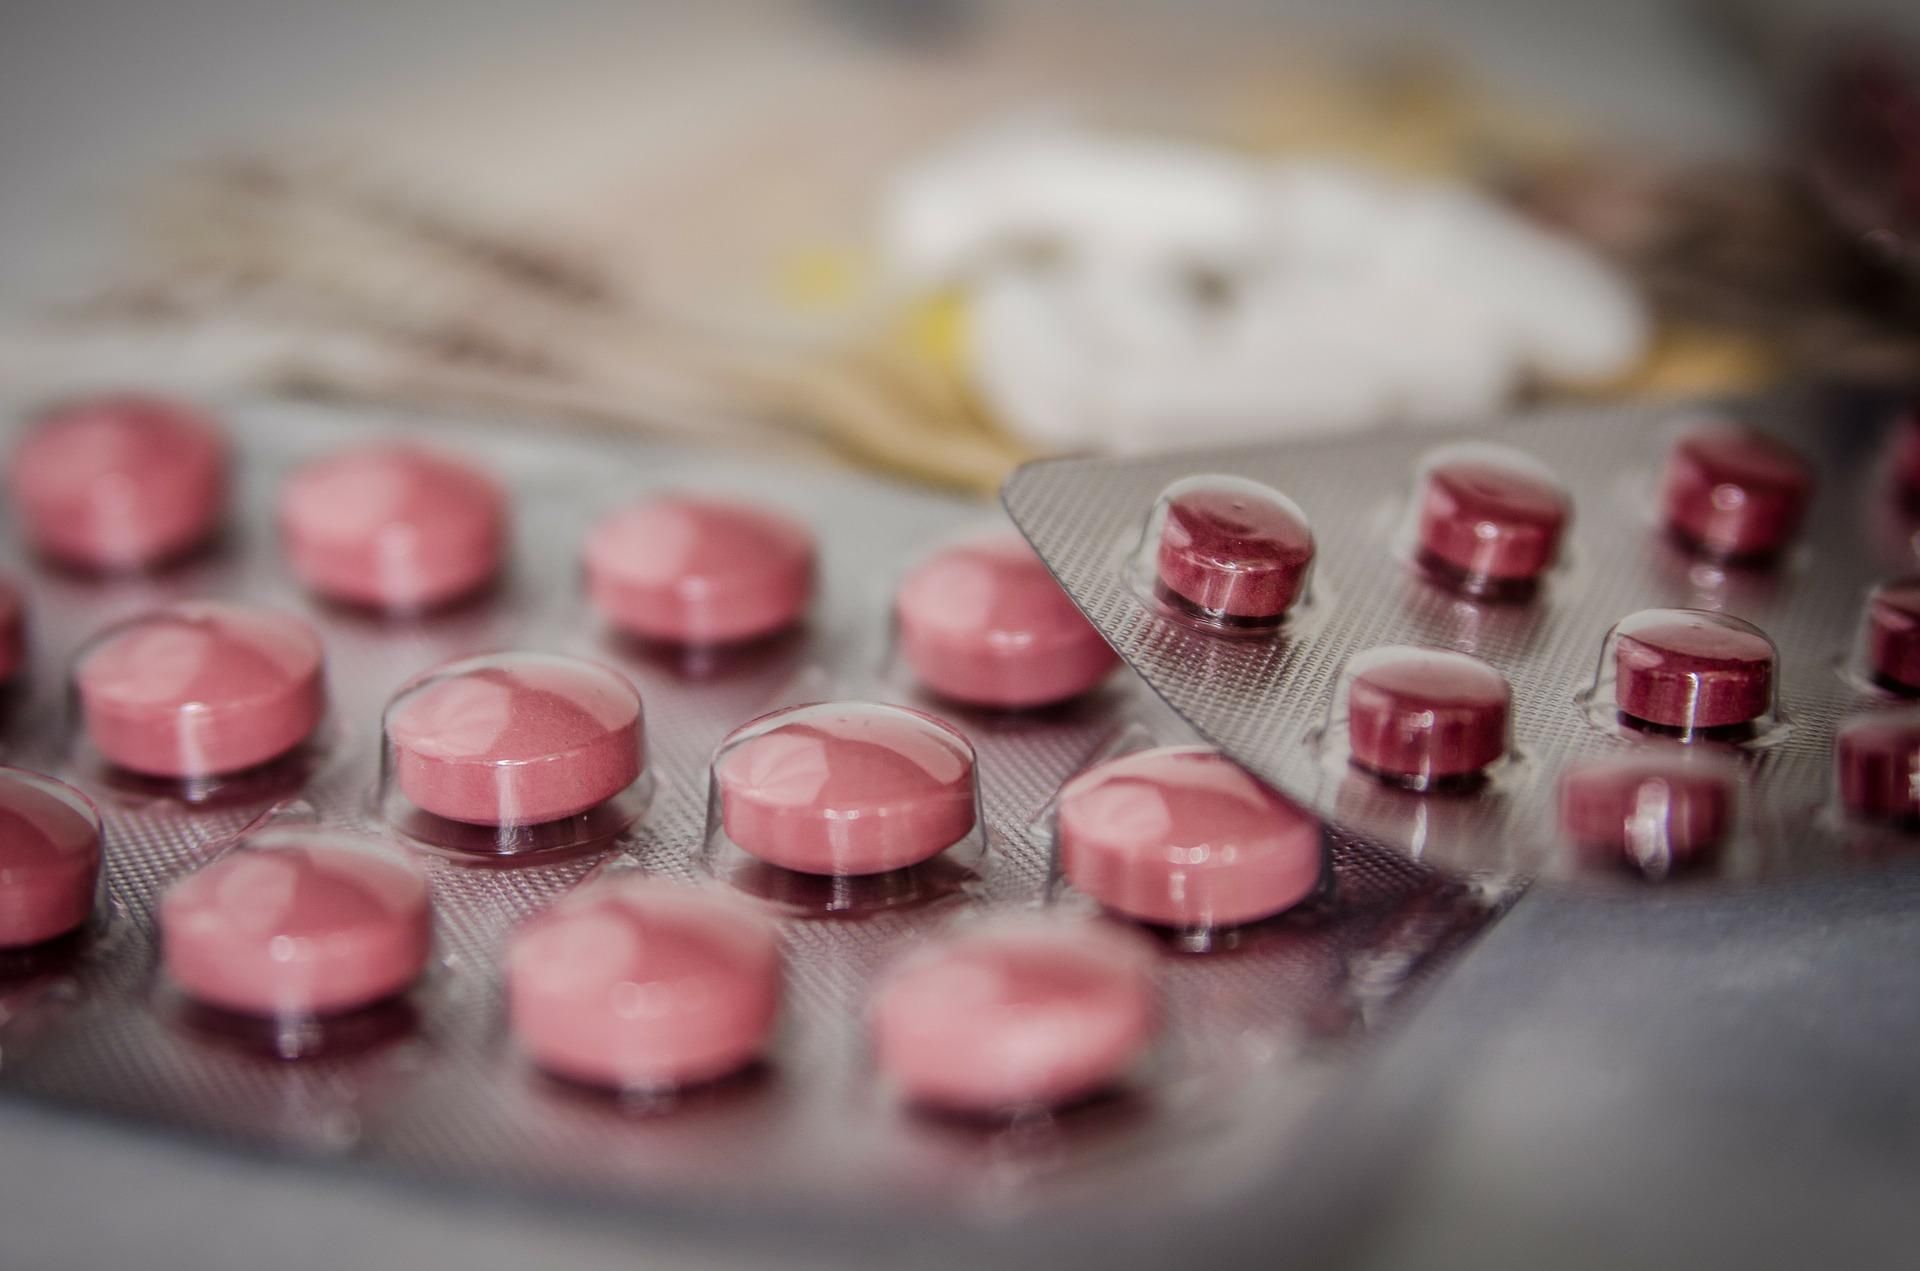 Выпили 40 таблеток, как в TikTok: подробности смерти девочки в Боярке 